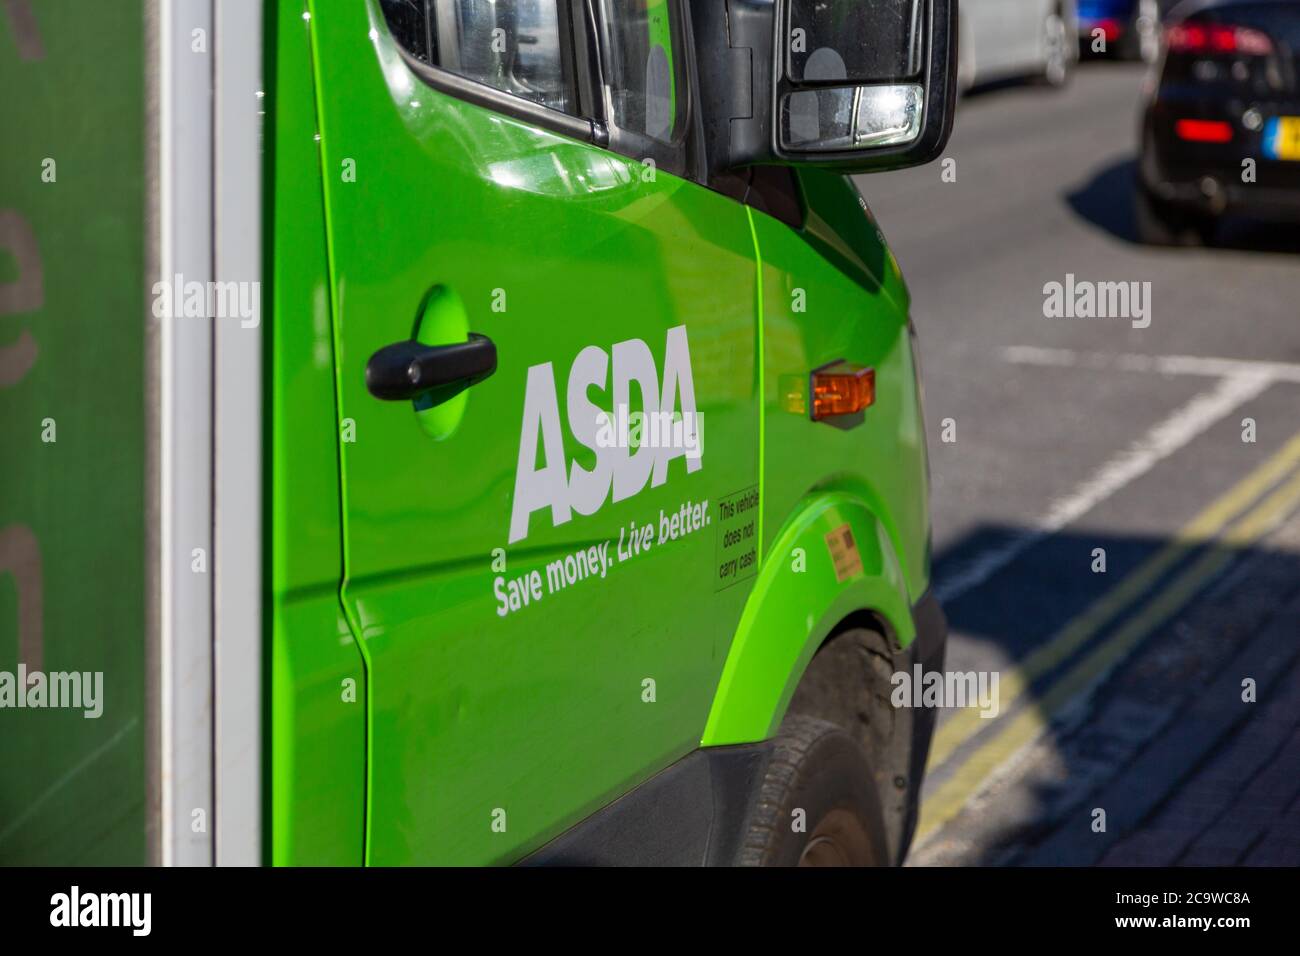 Le logo du supermarché ASDA sur le côté d'une fourgonnette de livraison ASDA utilisée pour les livraisons d'épicerie à domicile Banque D'Images